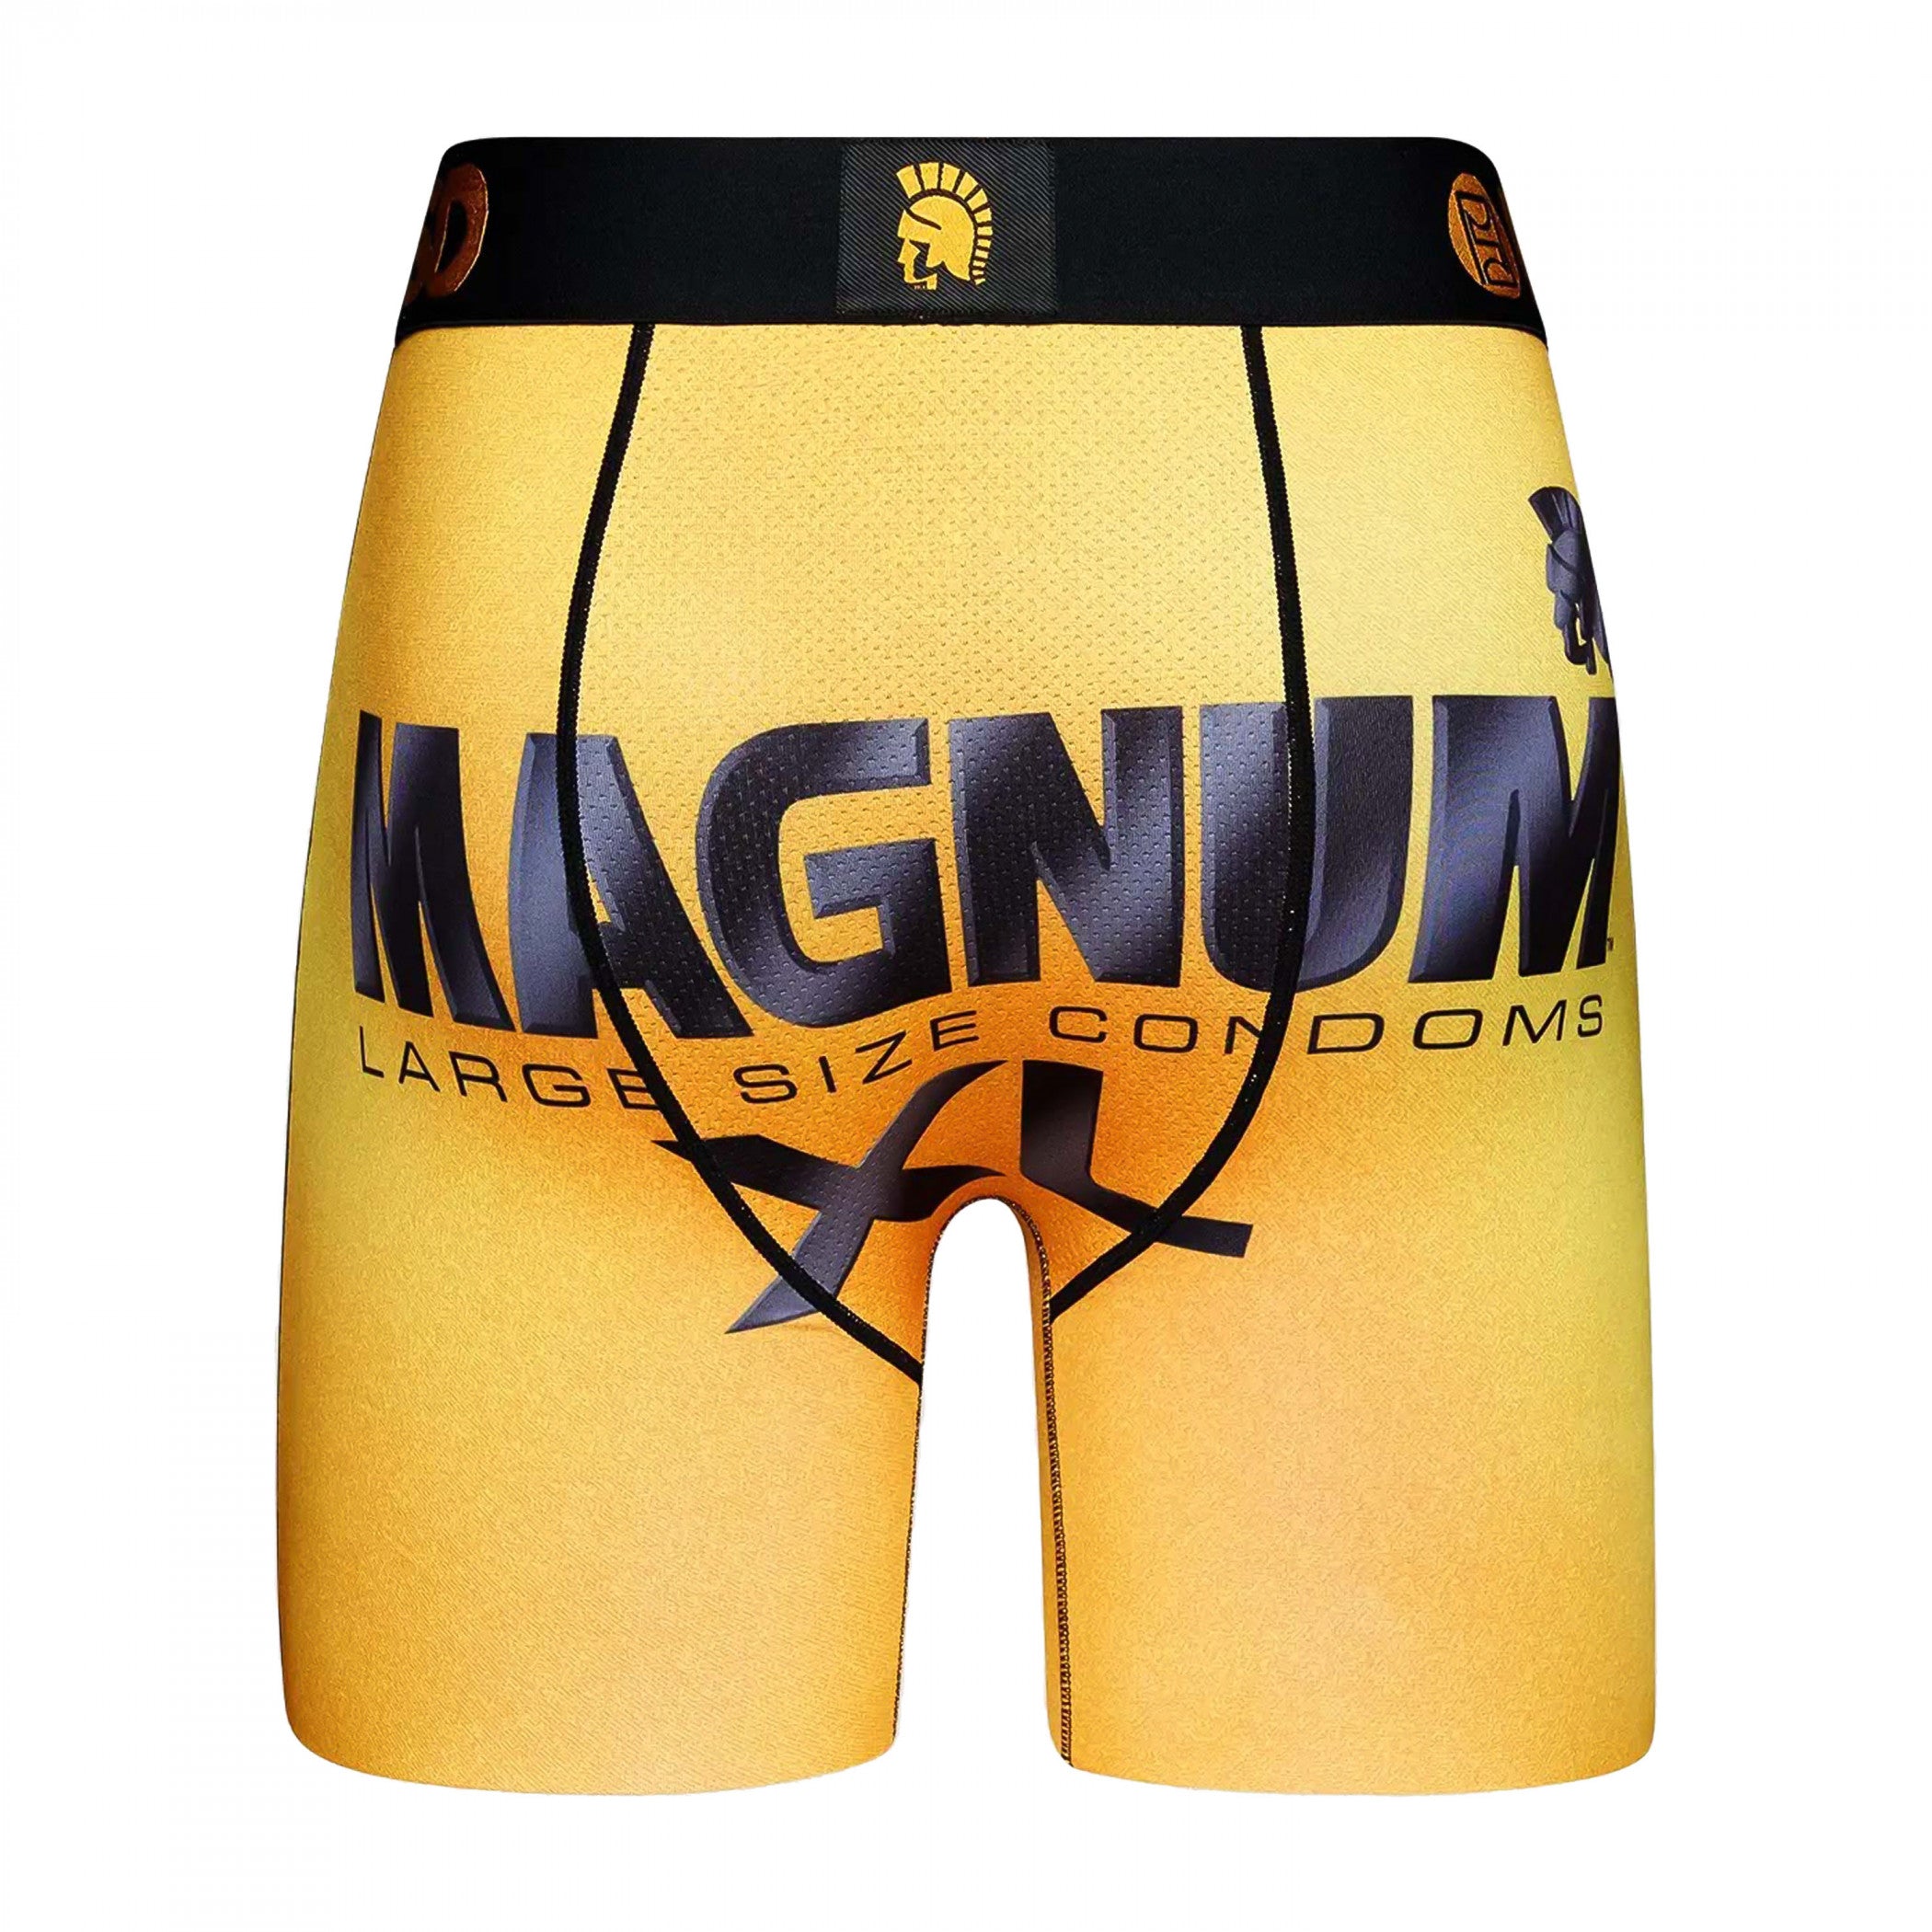 title:Magnum XL Gold Label PSD Boxer Briefs;color:Gold